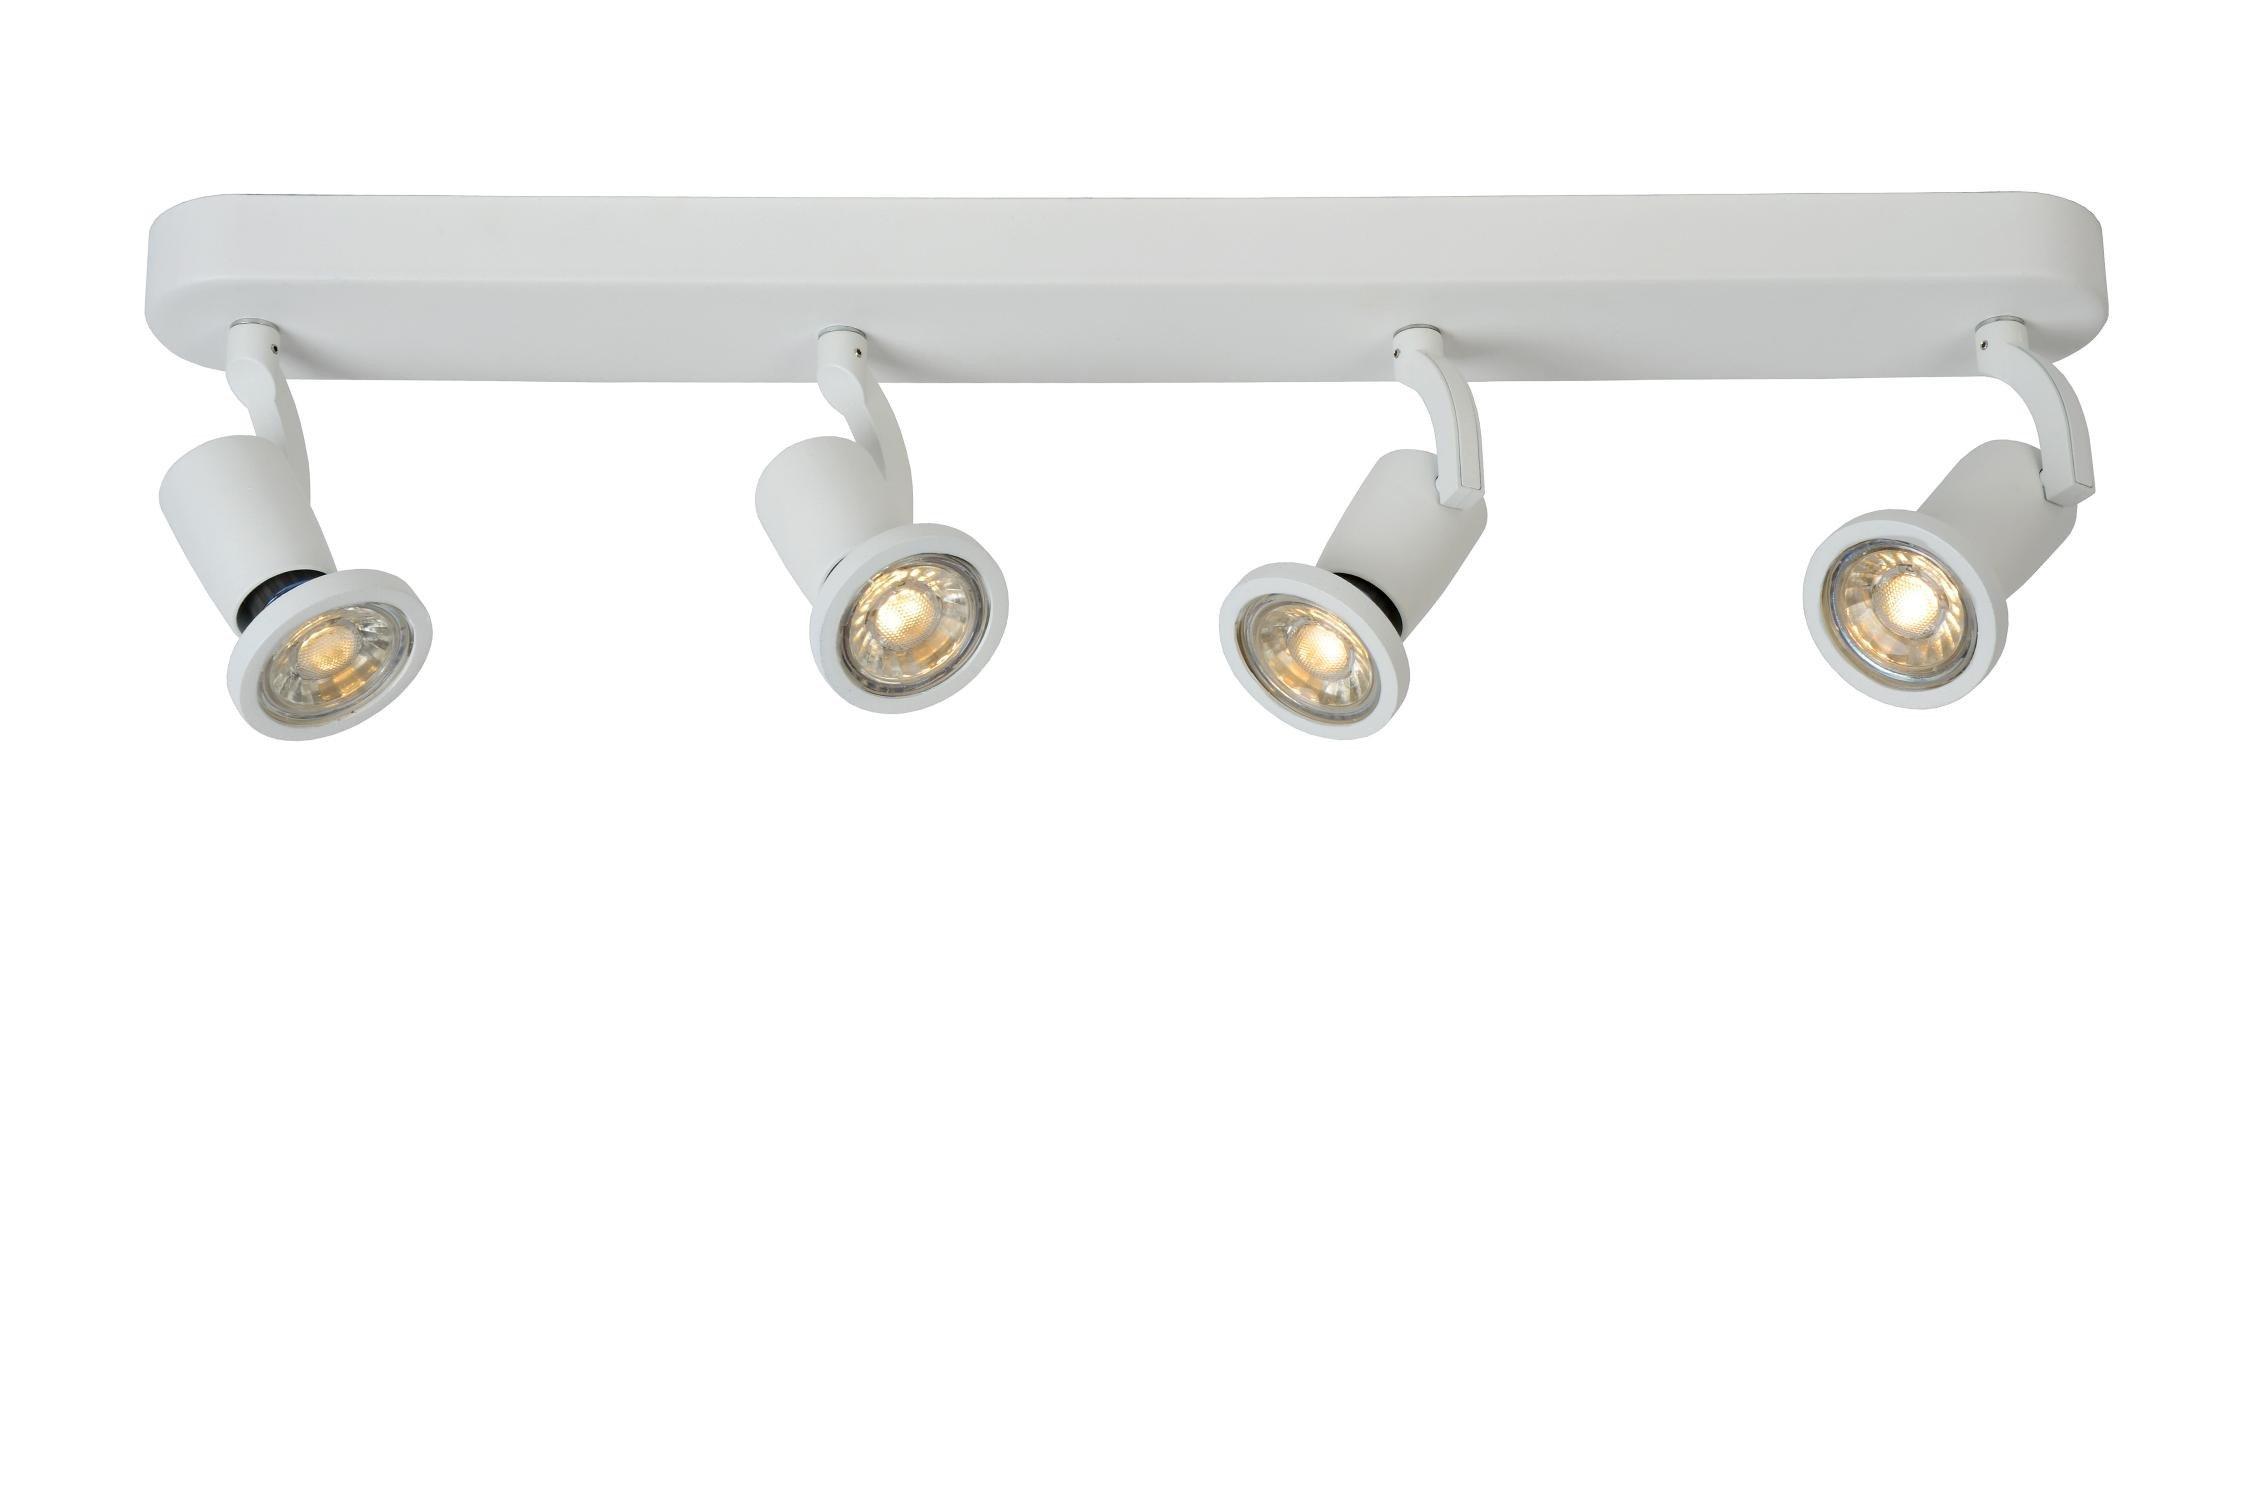 Lucide JasterLed Modern Ceiling Spotlight Bar LED GU10 4x5W 2700K White